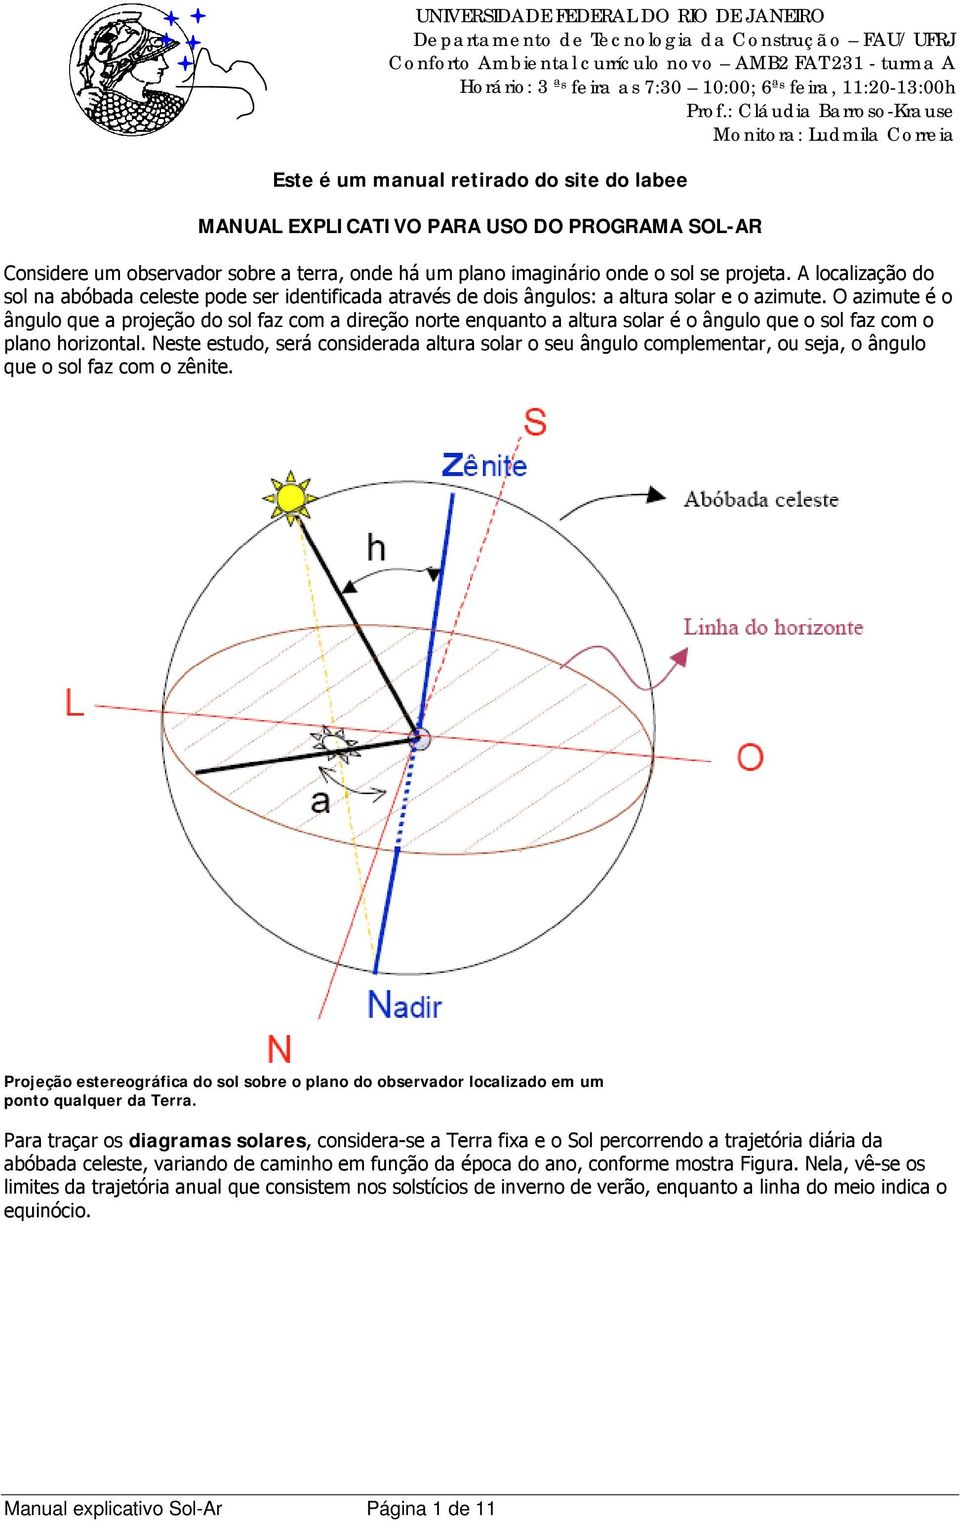 O azimute é o ângulo que a projeção do sol faz com a direção norte enquanto a altura solar é o ângulo que o sol faz com o plano horizontal.